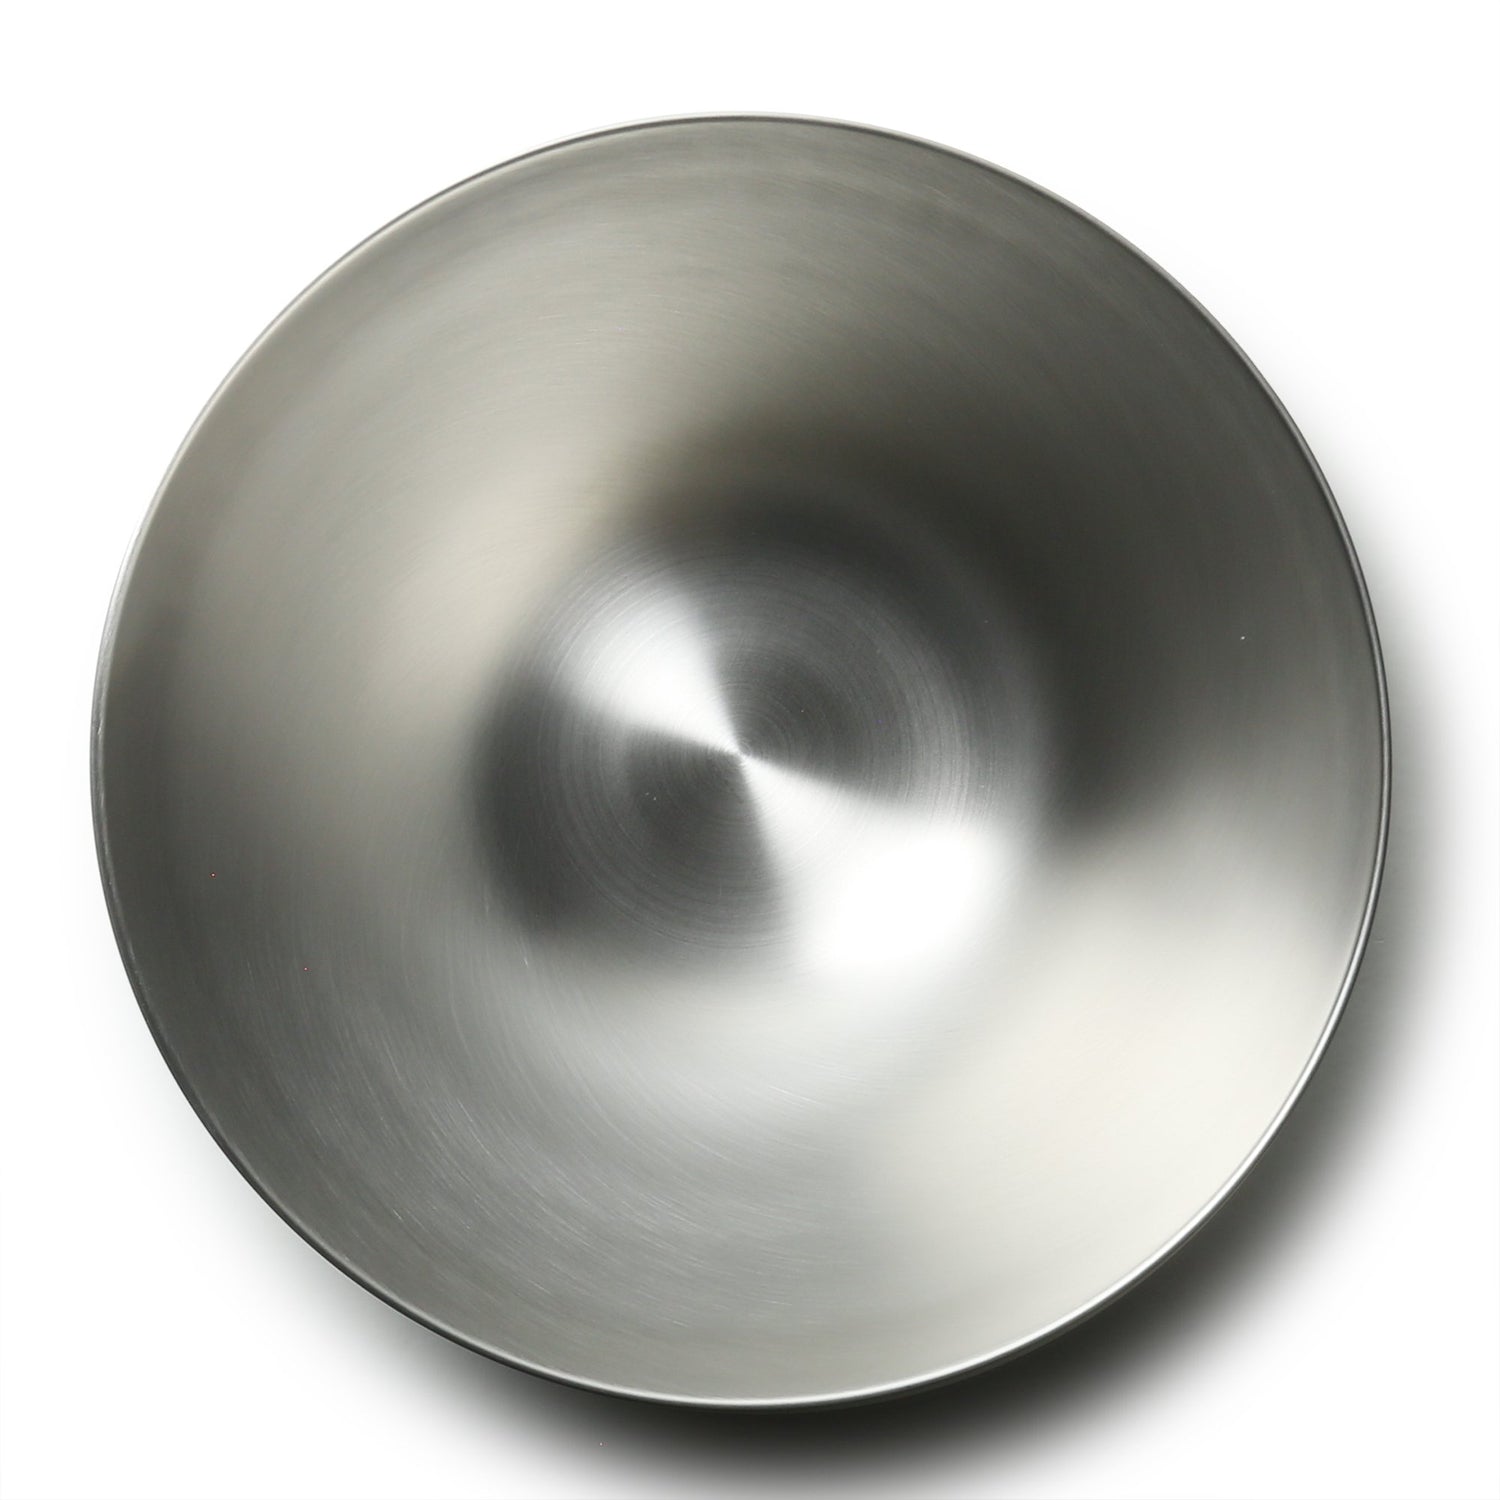 Sori Yanagi Stainless Steel Mixing Bowl - Globalkitchen Japan